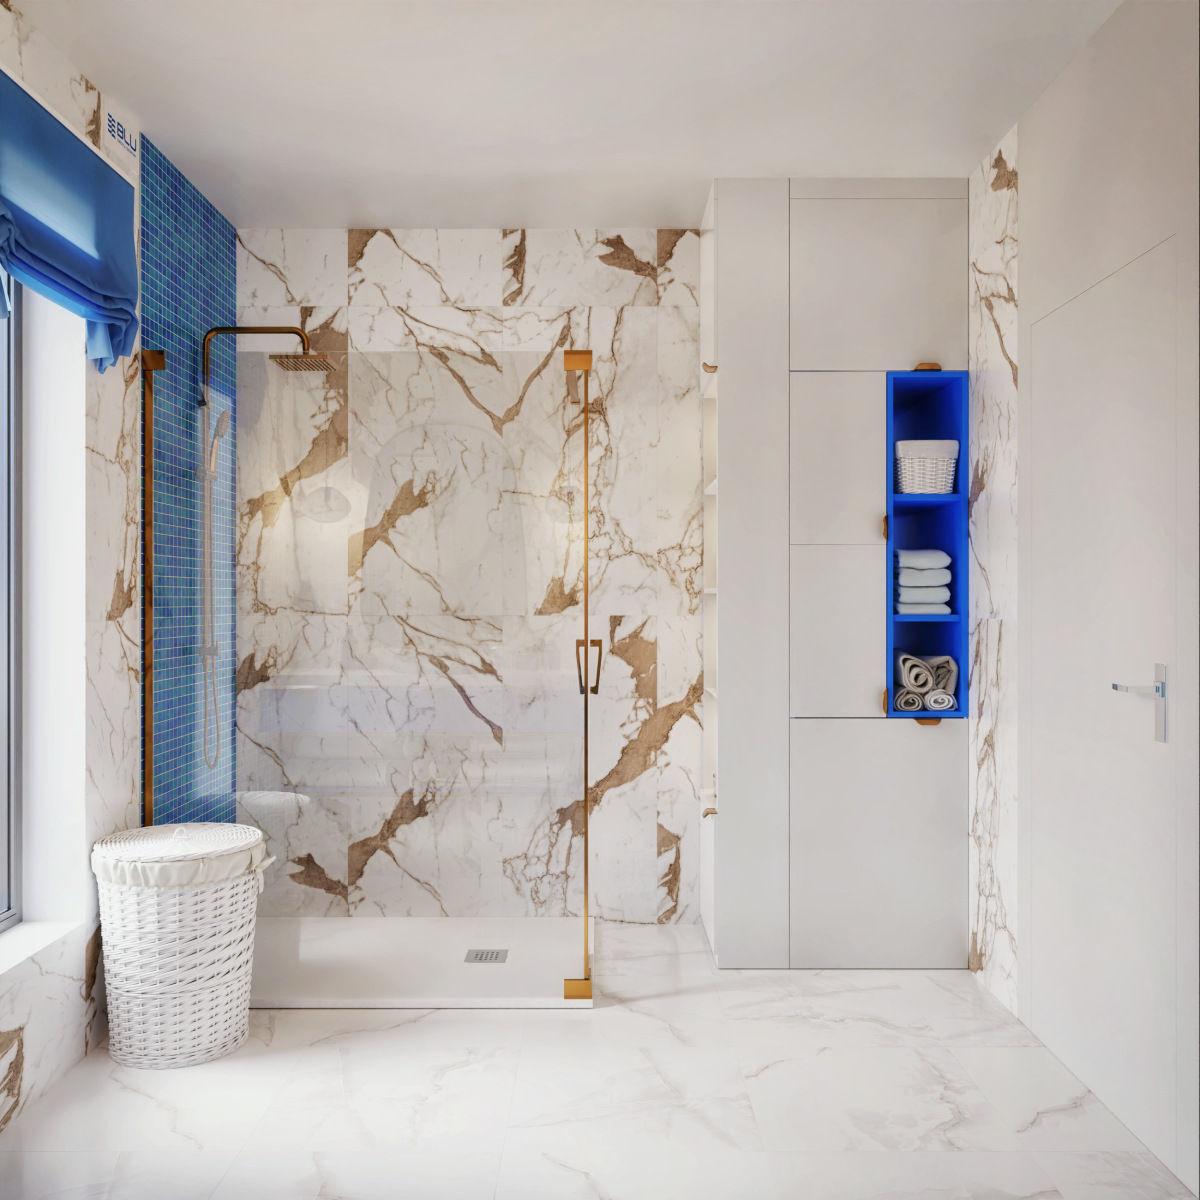 Śródziemnomorska łazienka z niebieską mozaiką i płytkami imitującymi marmur.